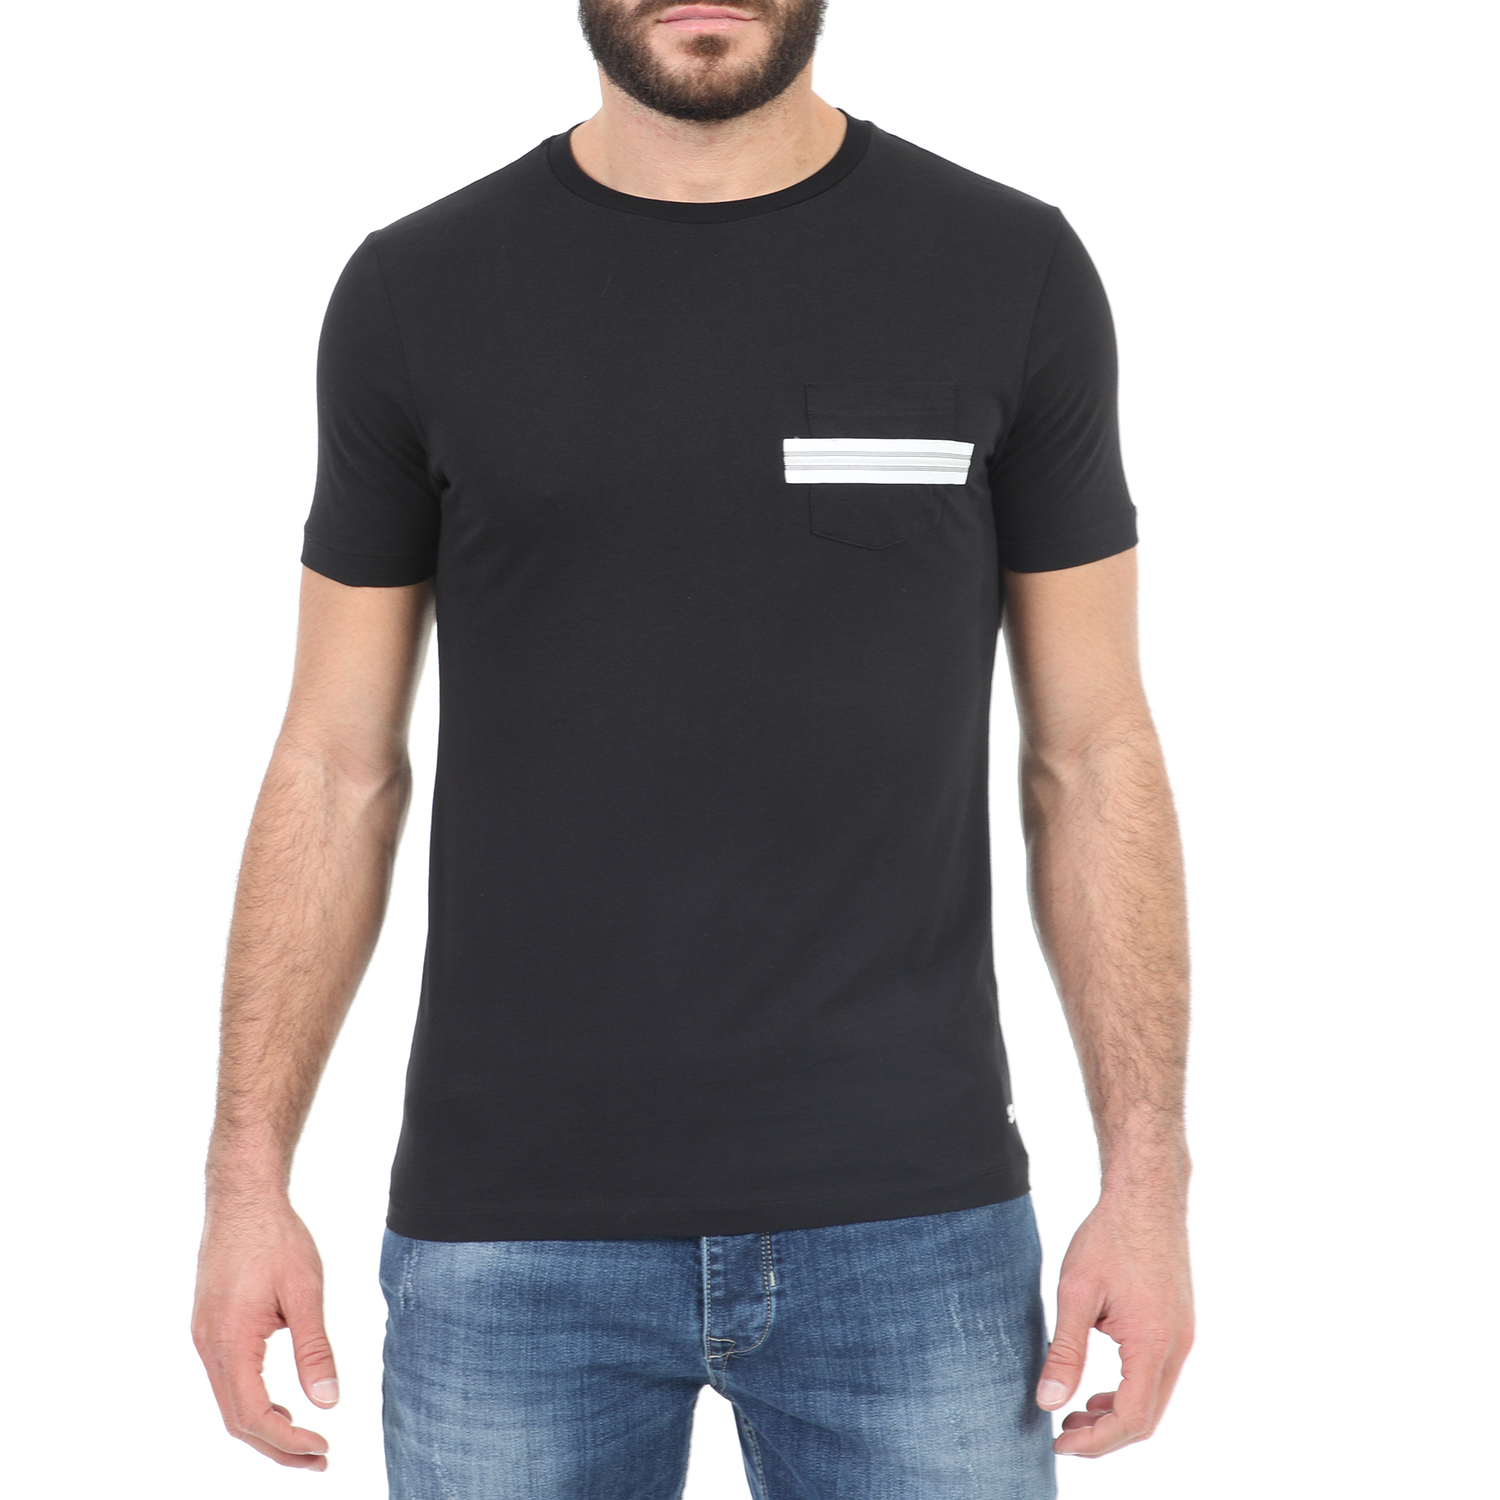 Ανδρικά/Ρούχα/Μπλούζες/Κοντομάνικες SSEINSE - Ανδρικό t-shirt SSEINSE μαύρο